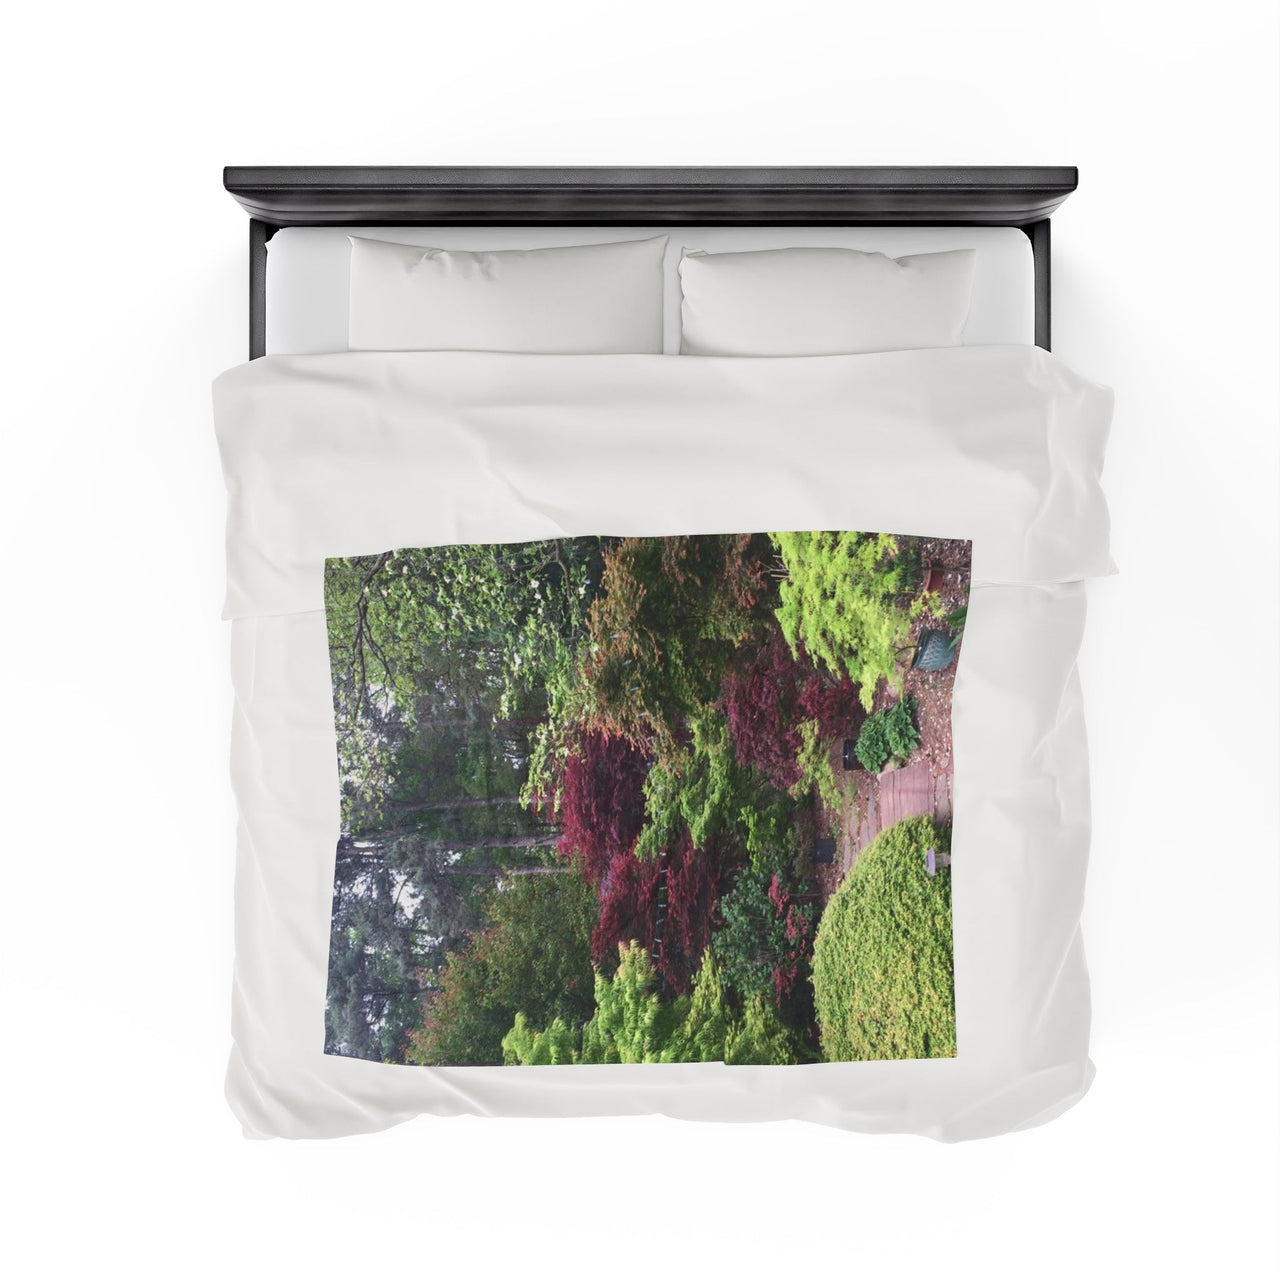 Japanese Garden Plush Blanket - Maple Ridge Nursery